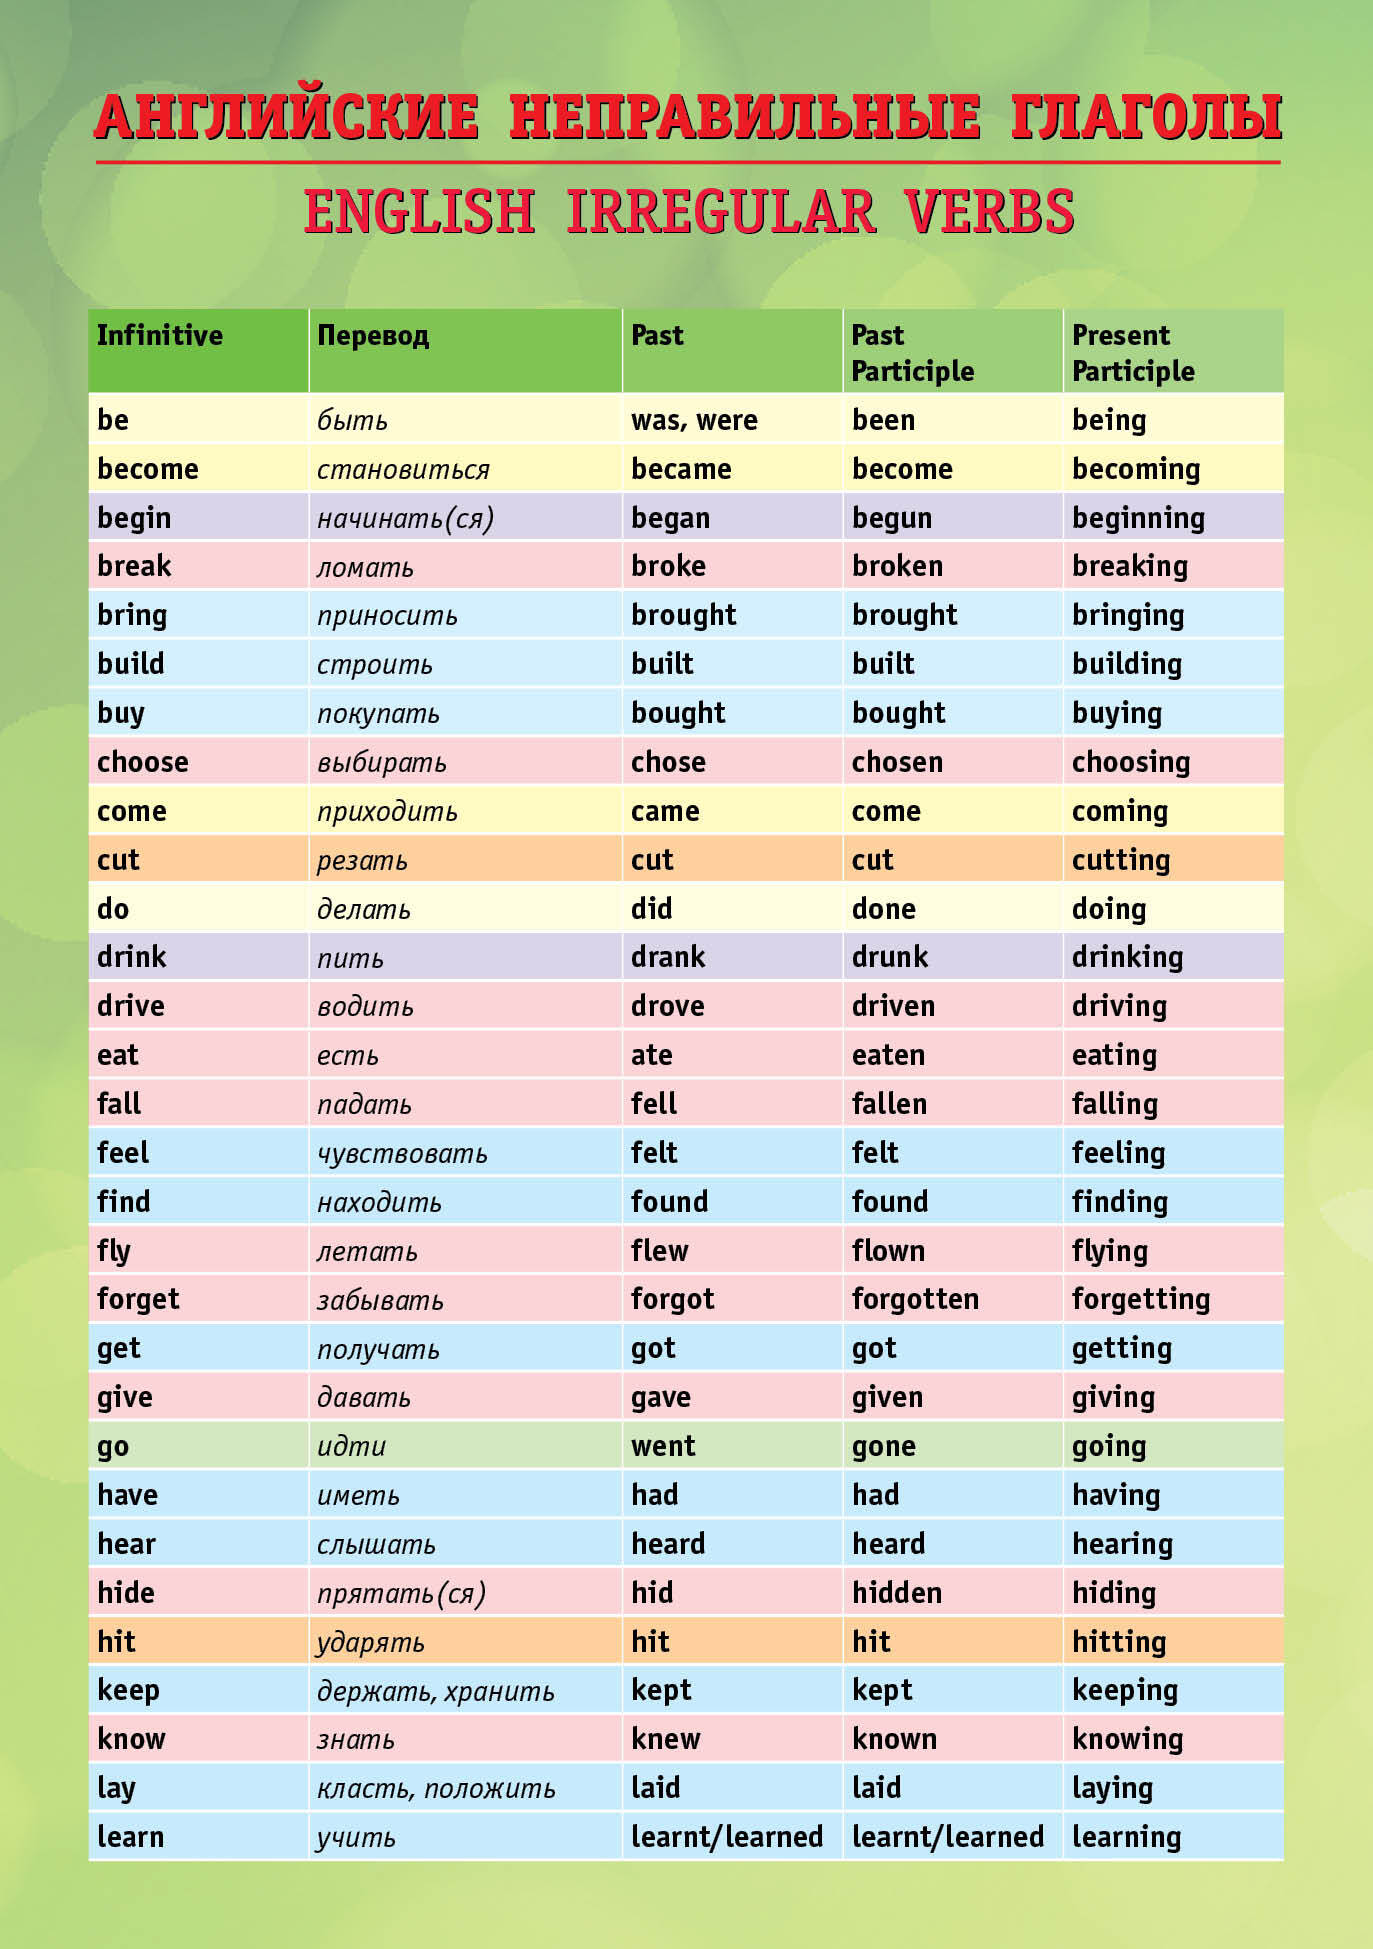 Таблица неправильных глаголов английского языка